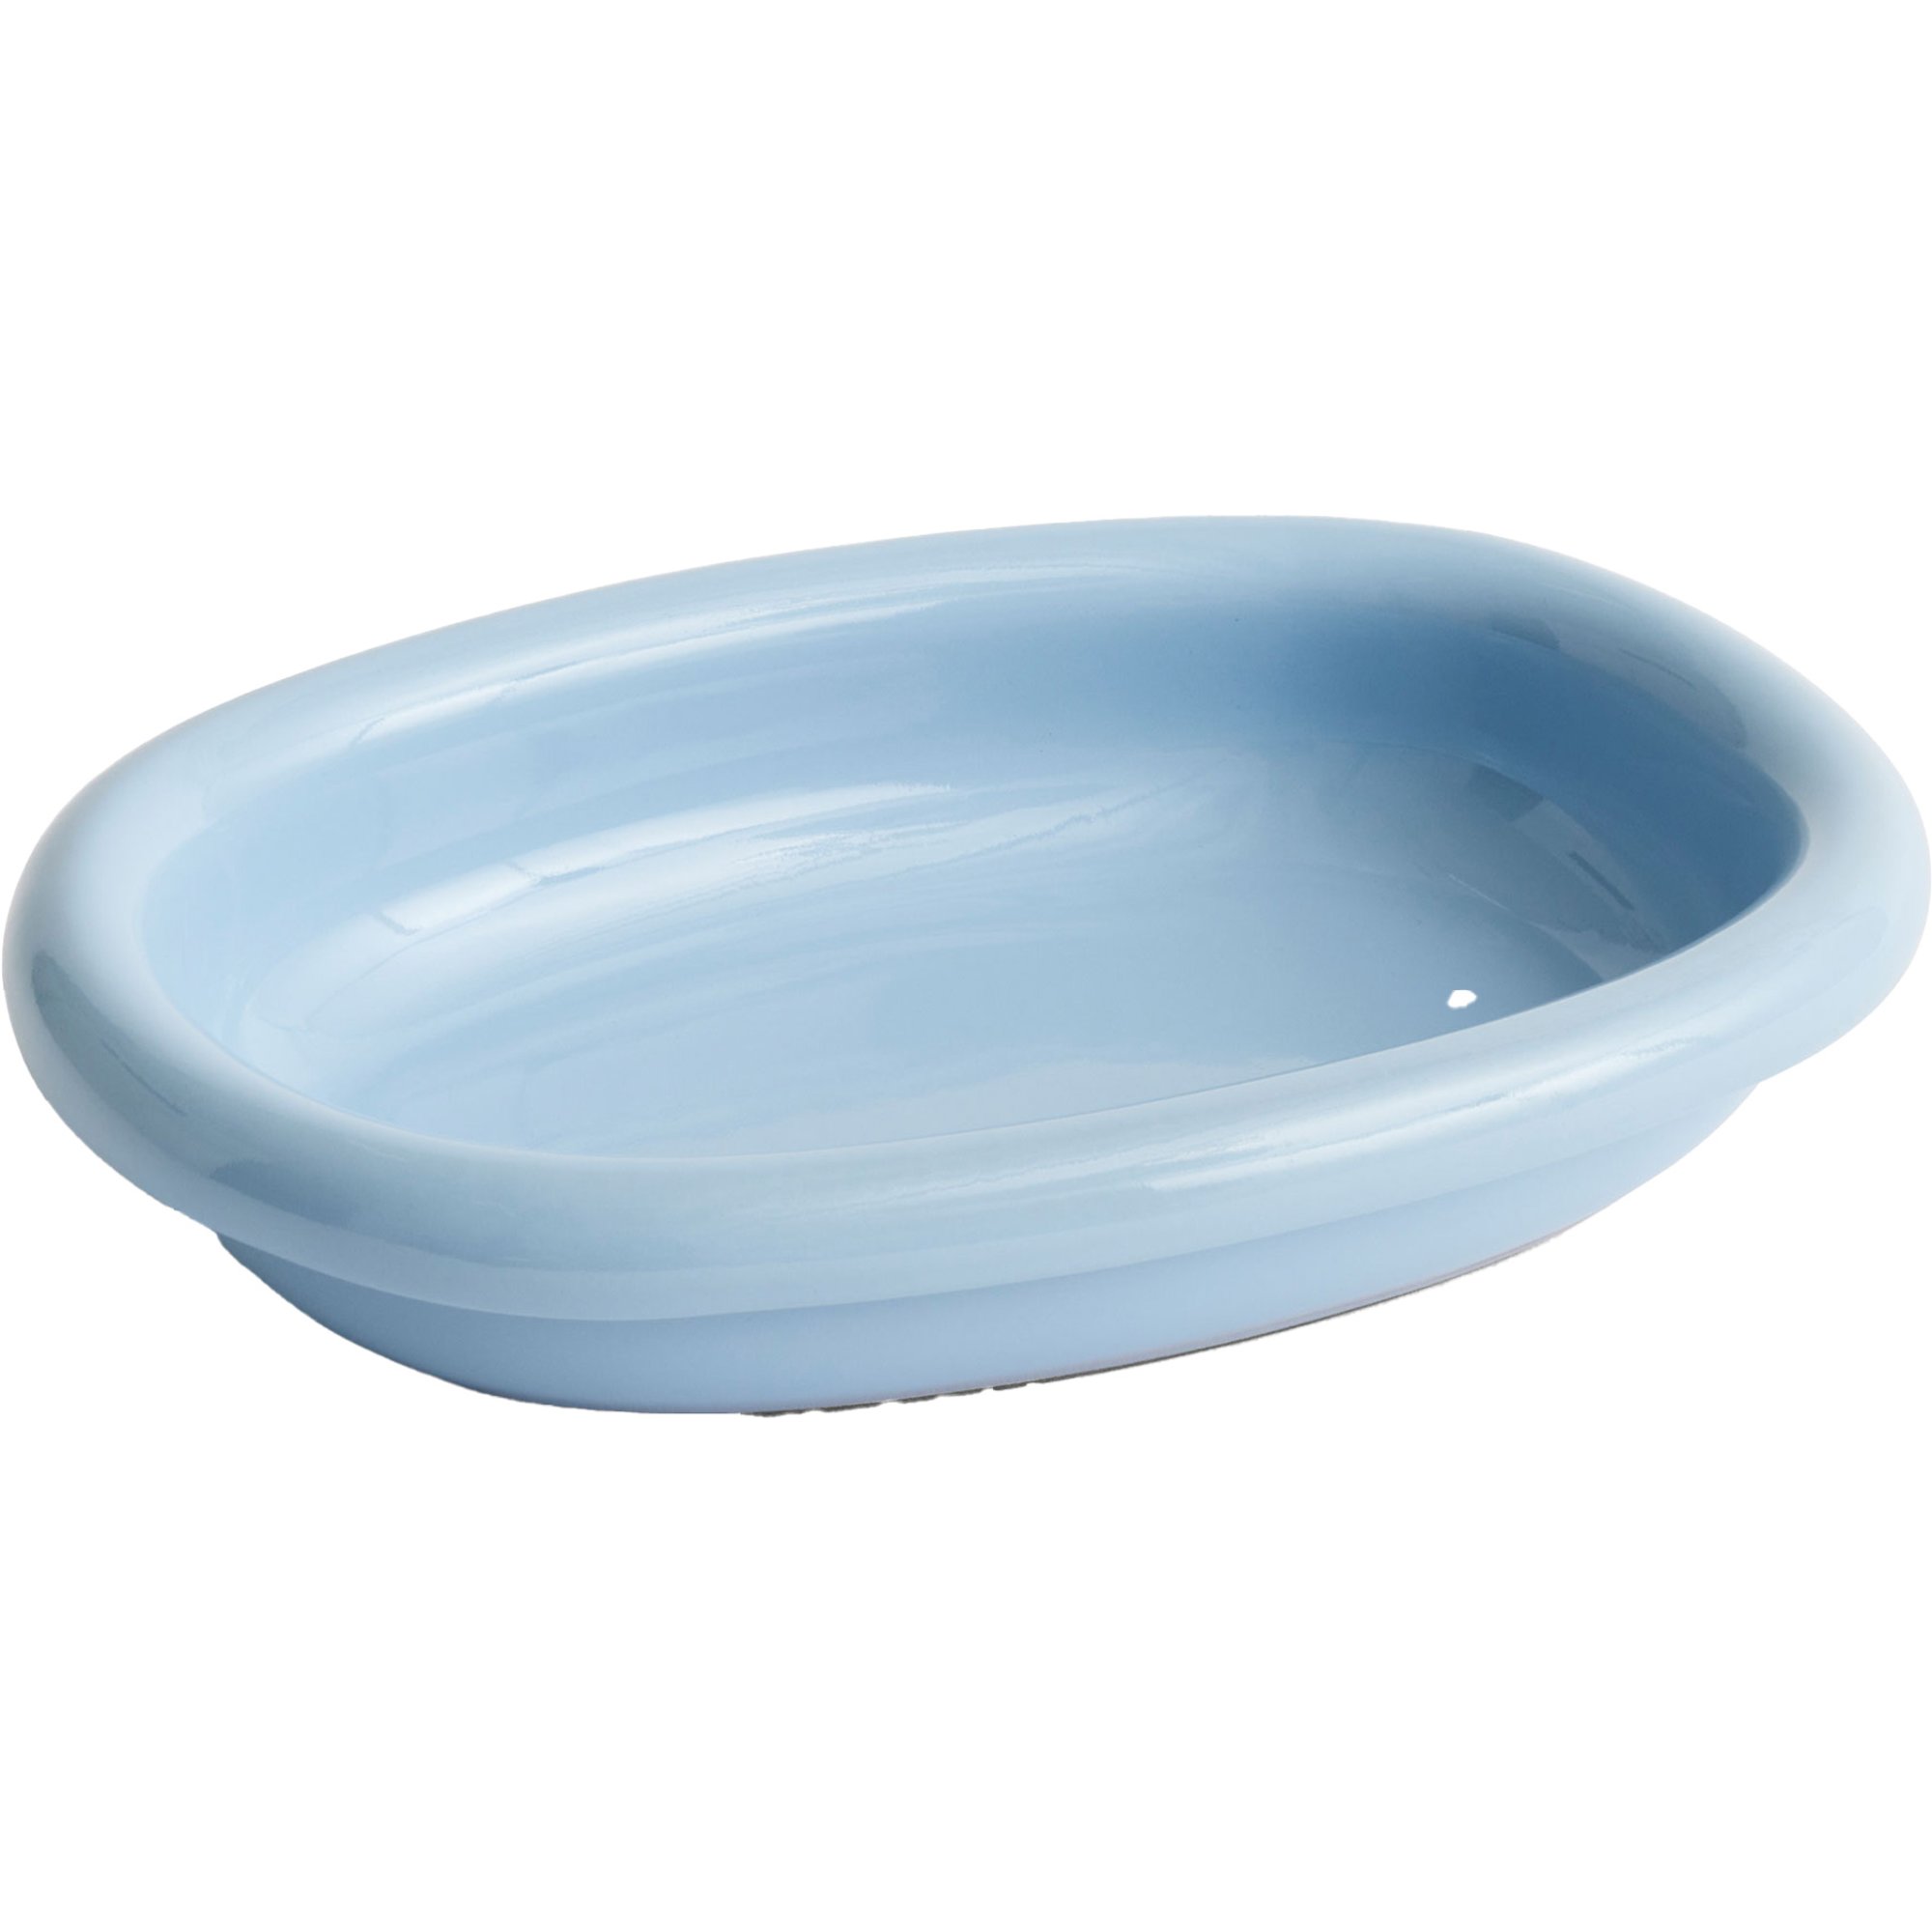 9: HAY Barro oval tallerken small, lyseblå